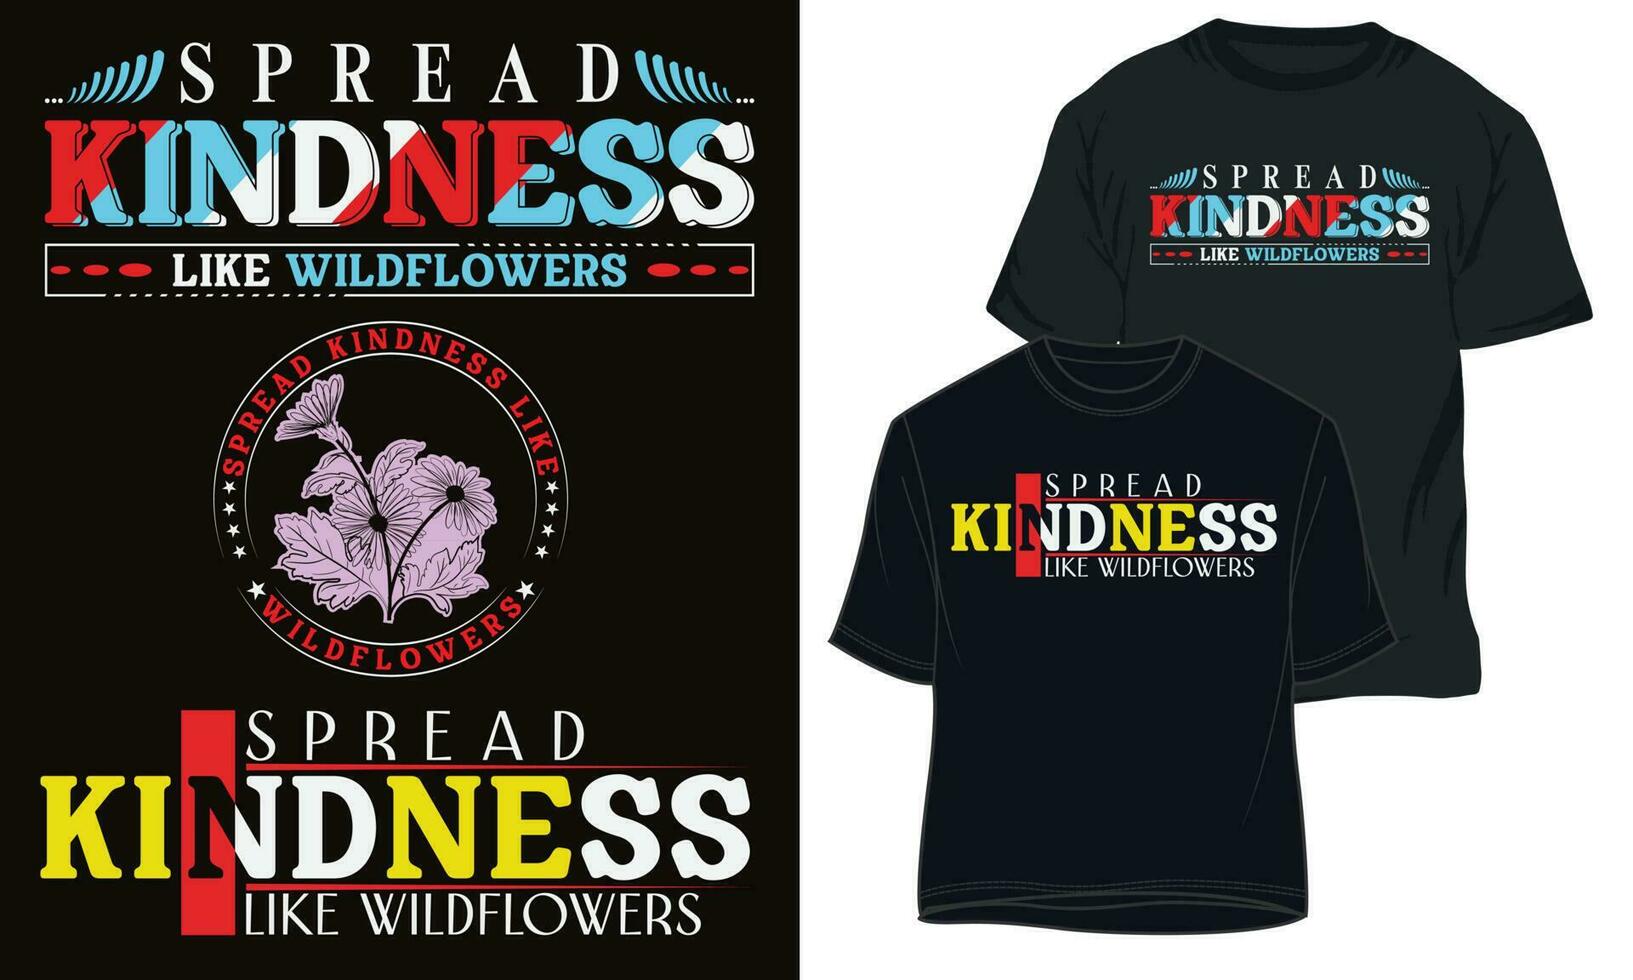 spridning vänlighet tycka om vilda blommor. typografi t-shirt design vektor